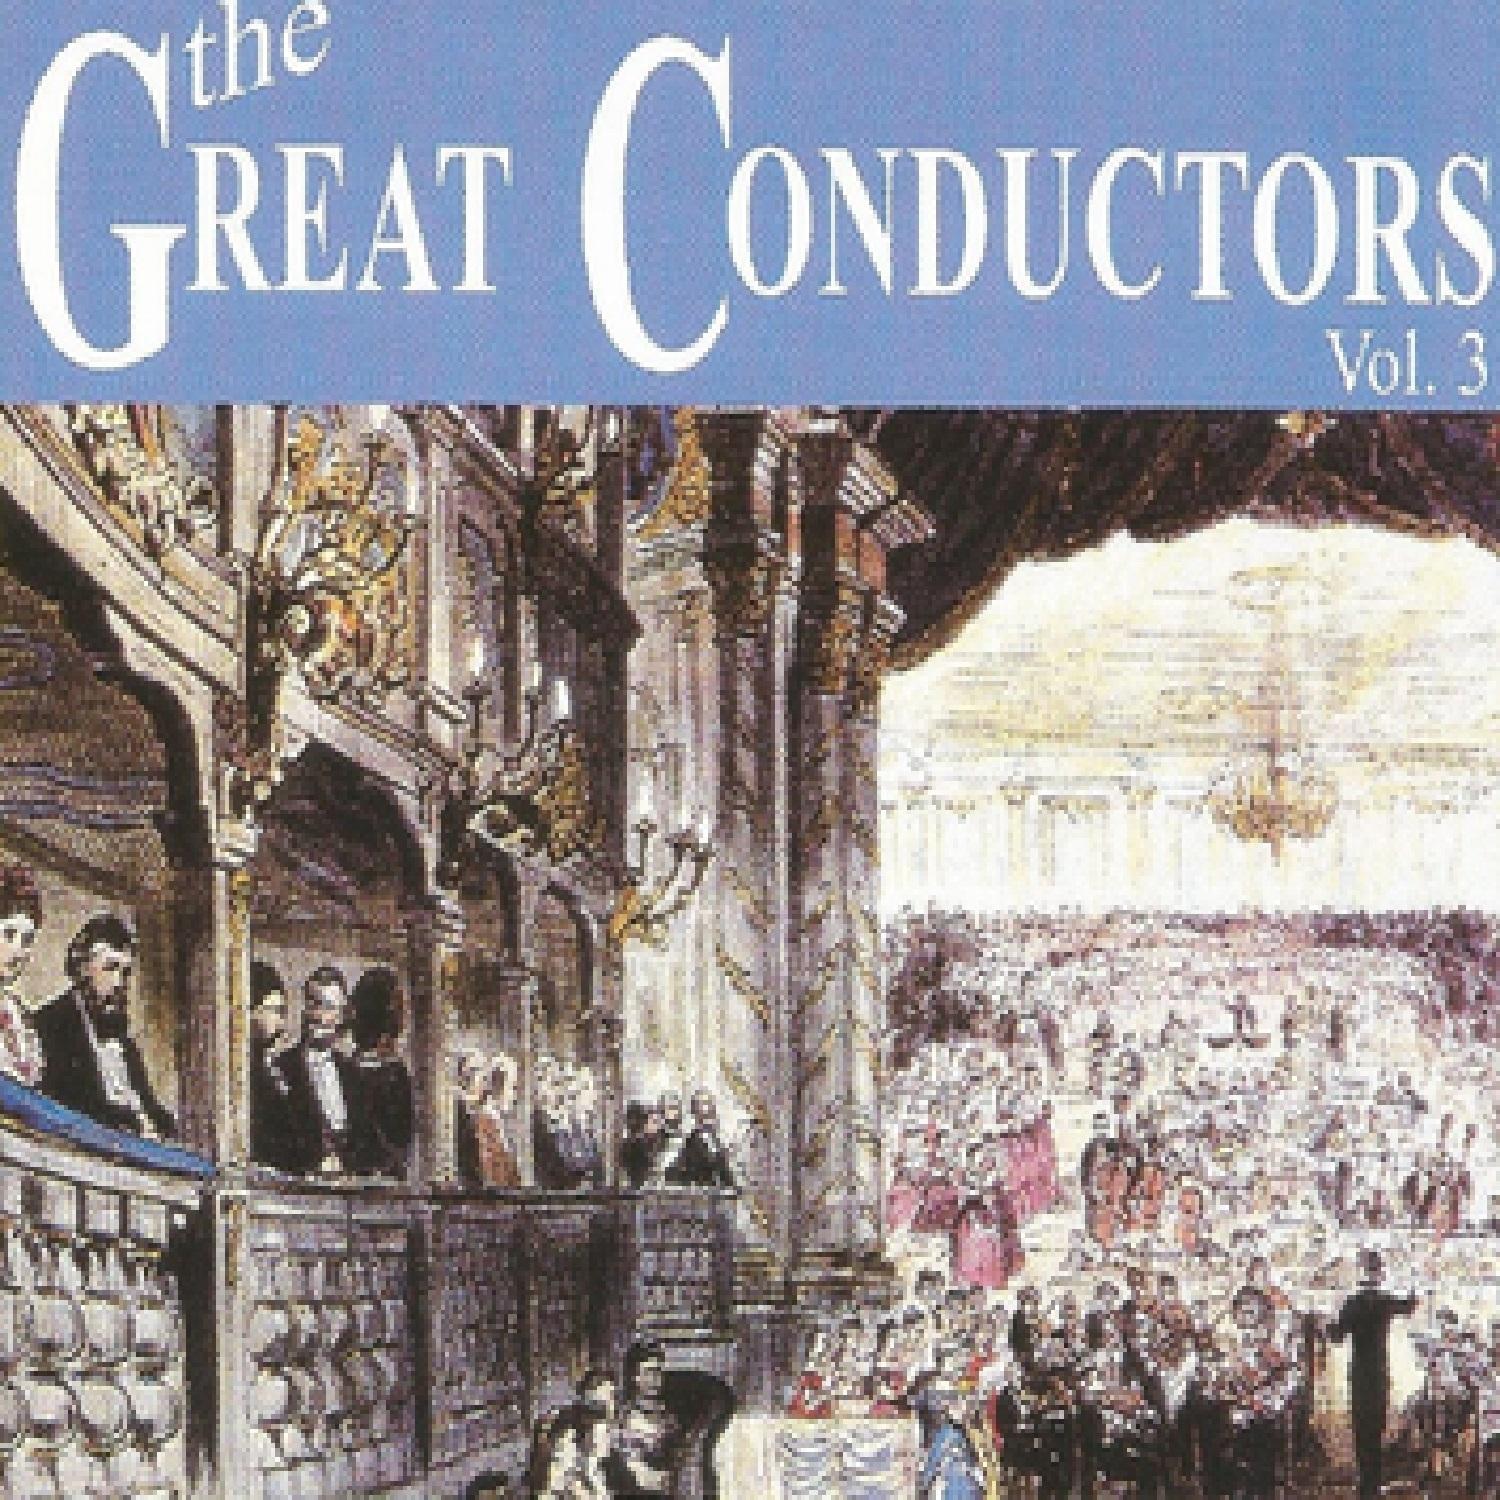 The Great Conductors - Vol. 3